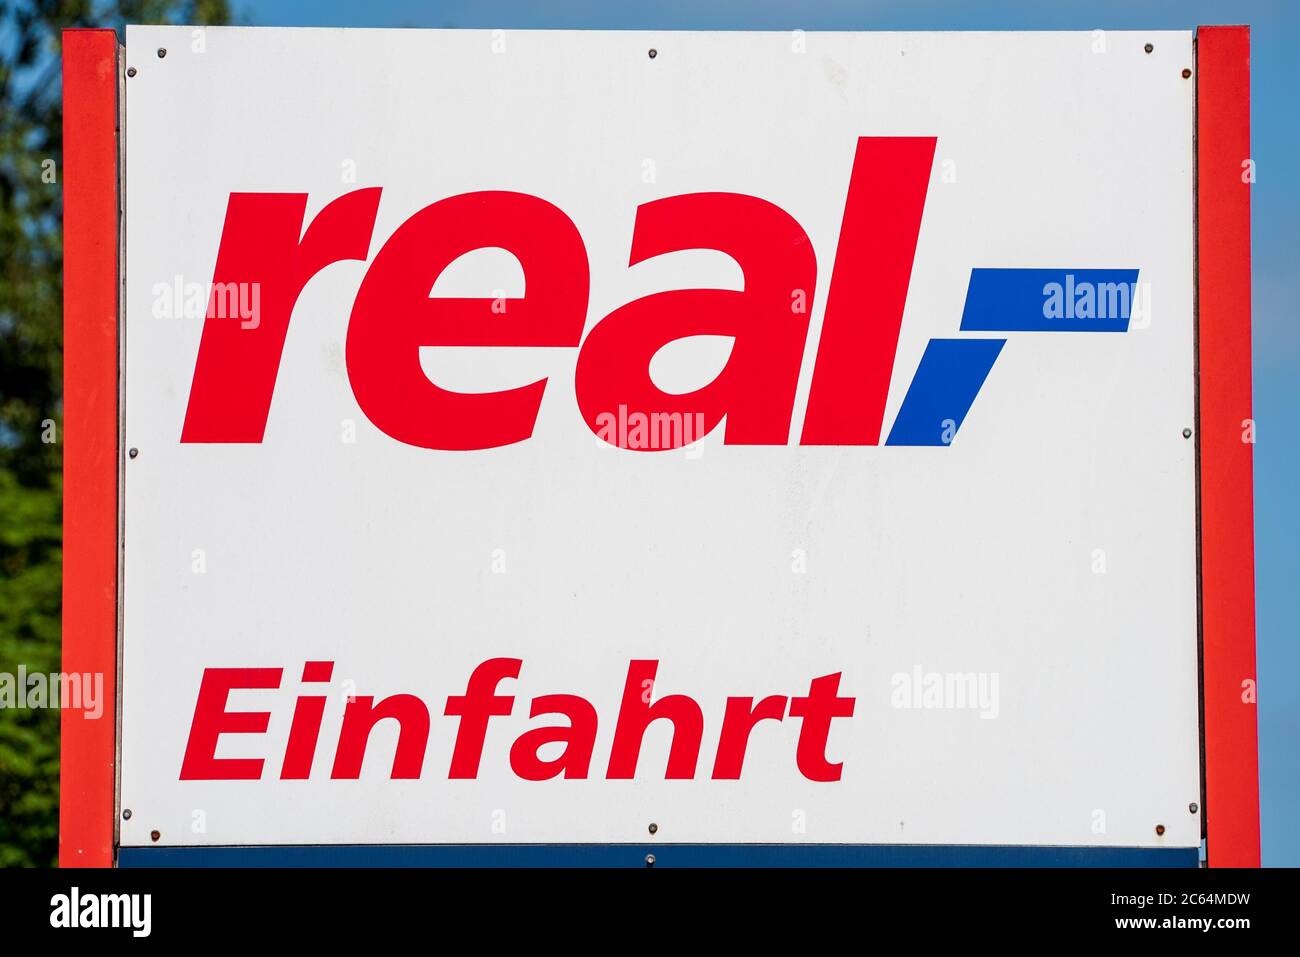 Real betreibt eine Einzelhandelskette in Deutschland mit mehreren hundert SB-Warenhäusern Stock Photo